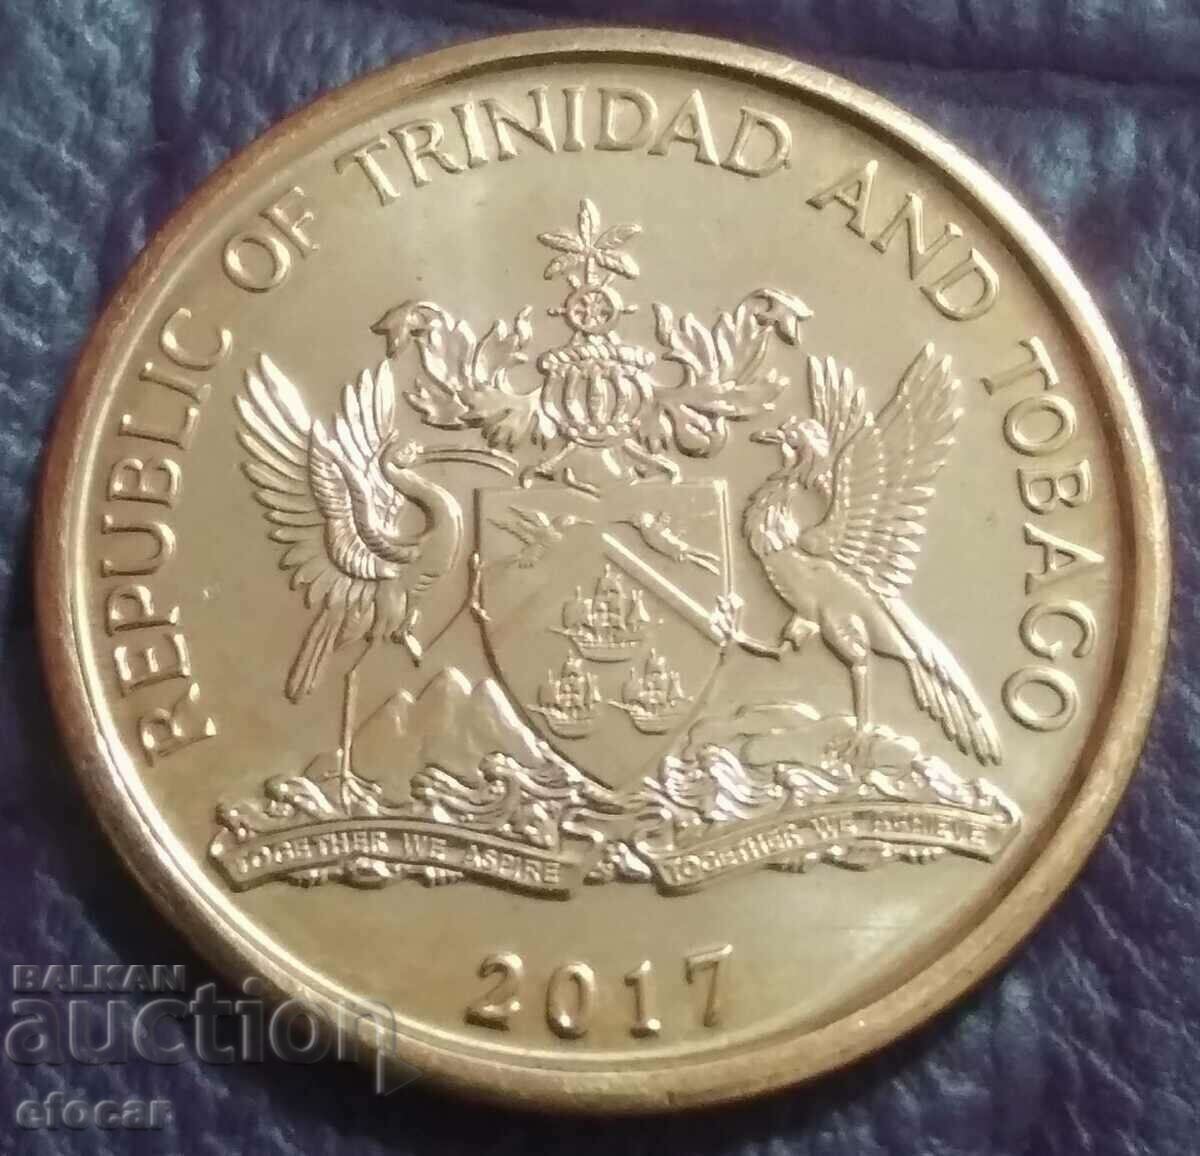 5 σεντ Τρινιντάντ και Τομπάγκο 2017